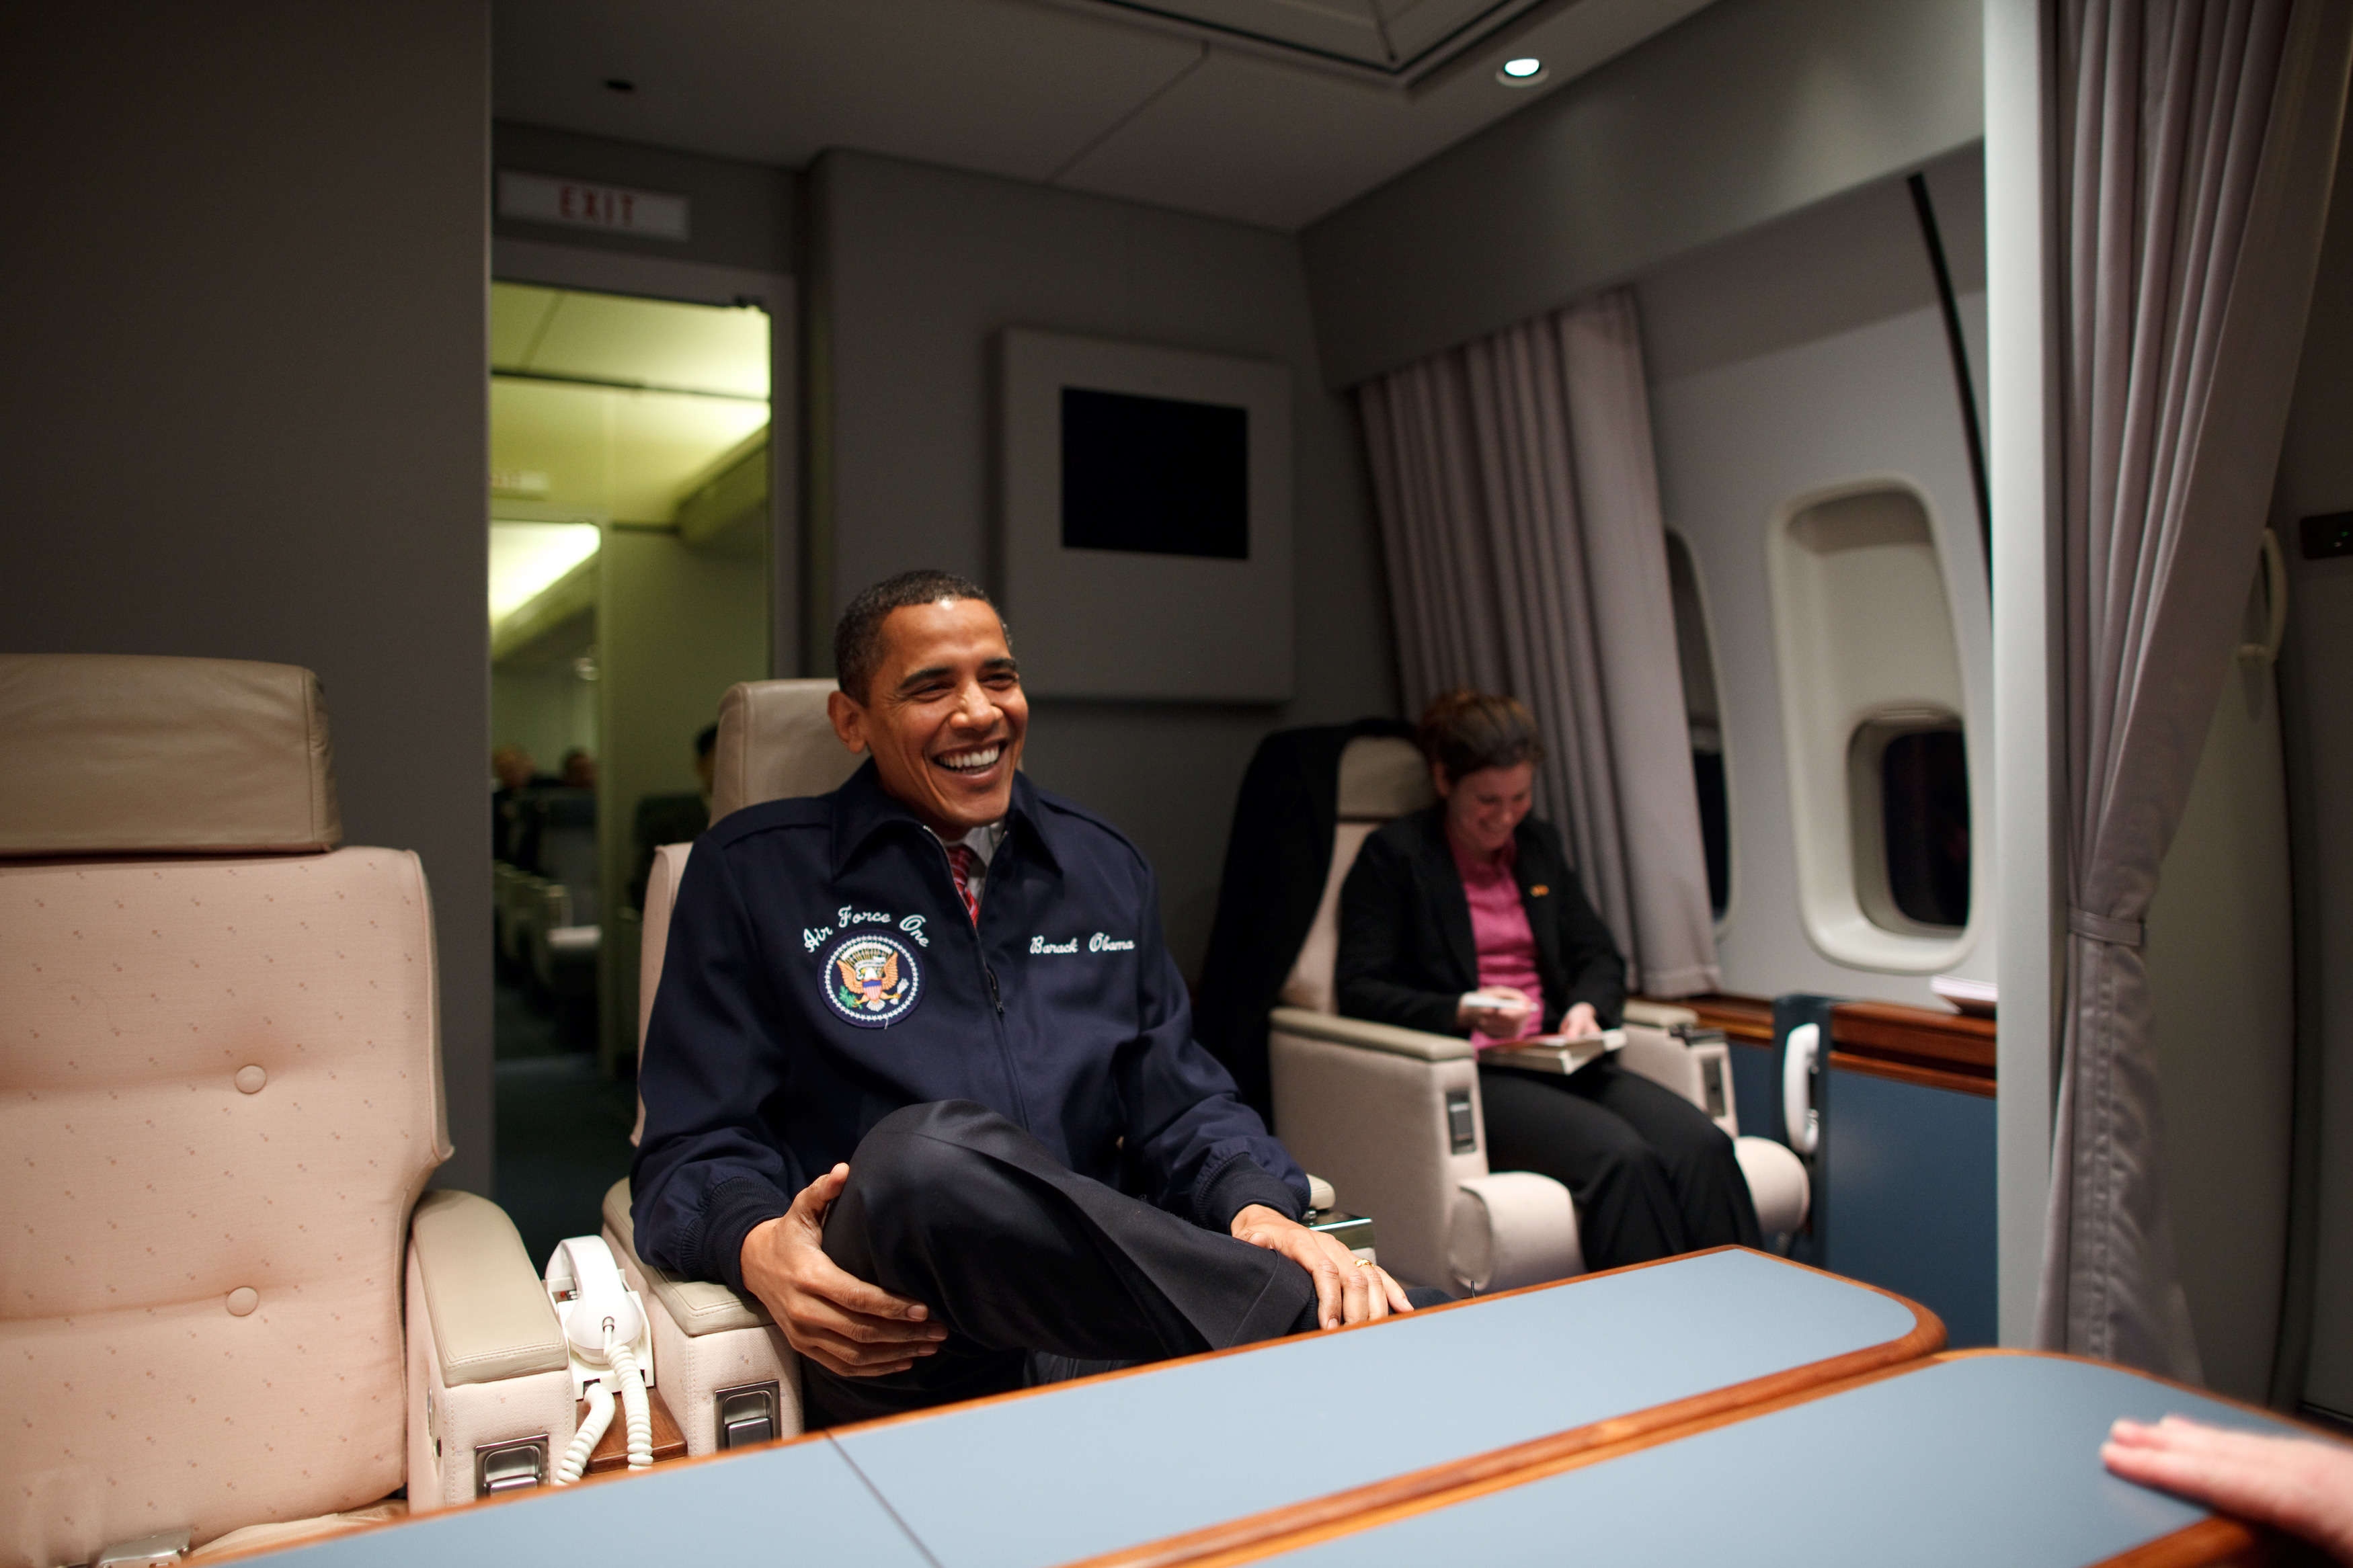 Президентский самолет. Самолет президента США Air Force one. Борт номер 1 президента США внутри. Барак Обама в самолете. Самолёт президента США изнутри.